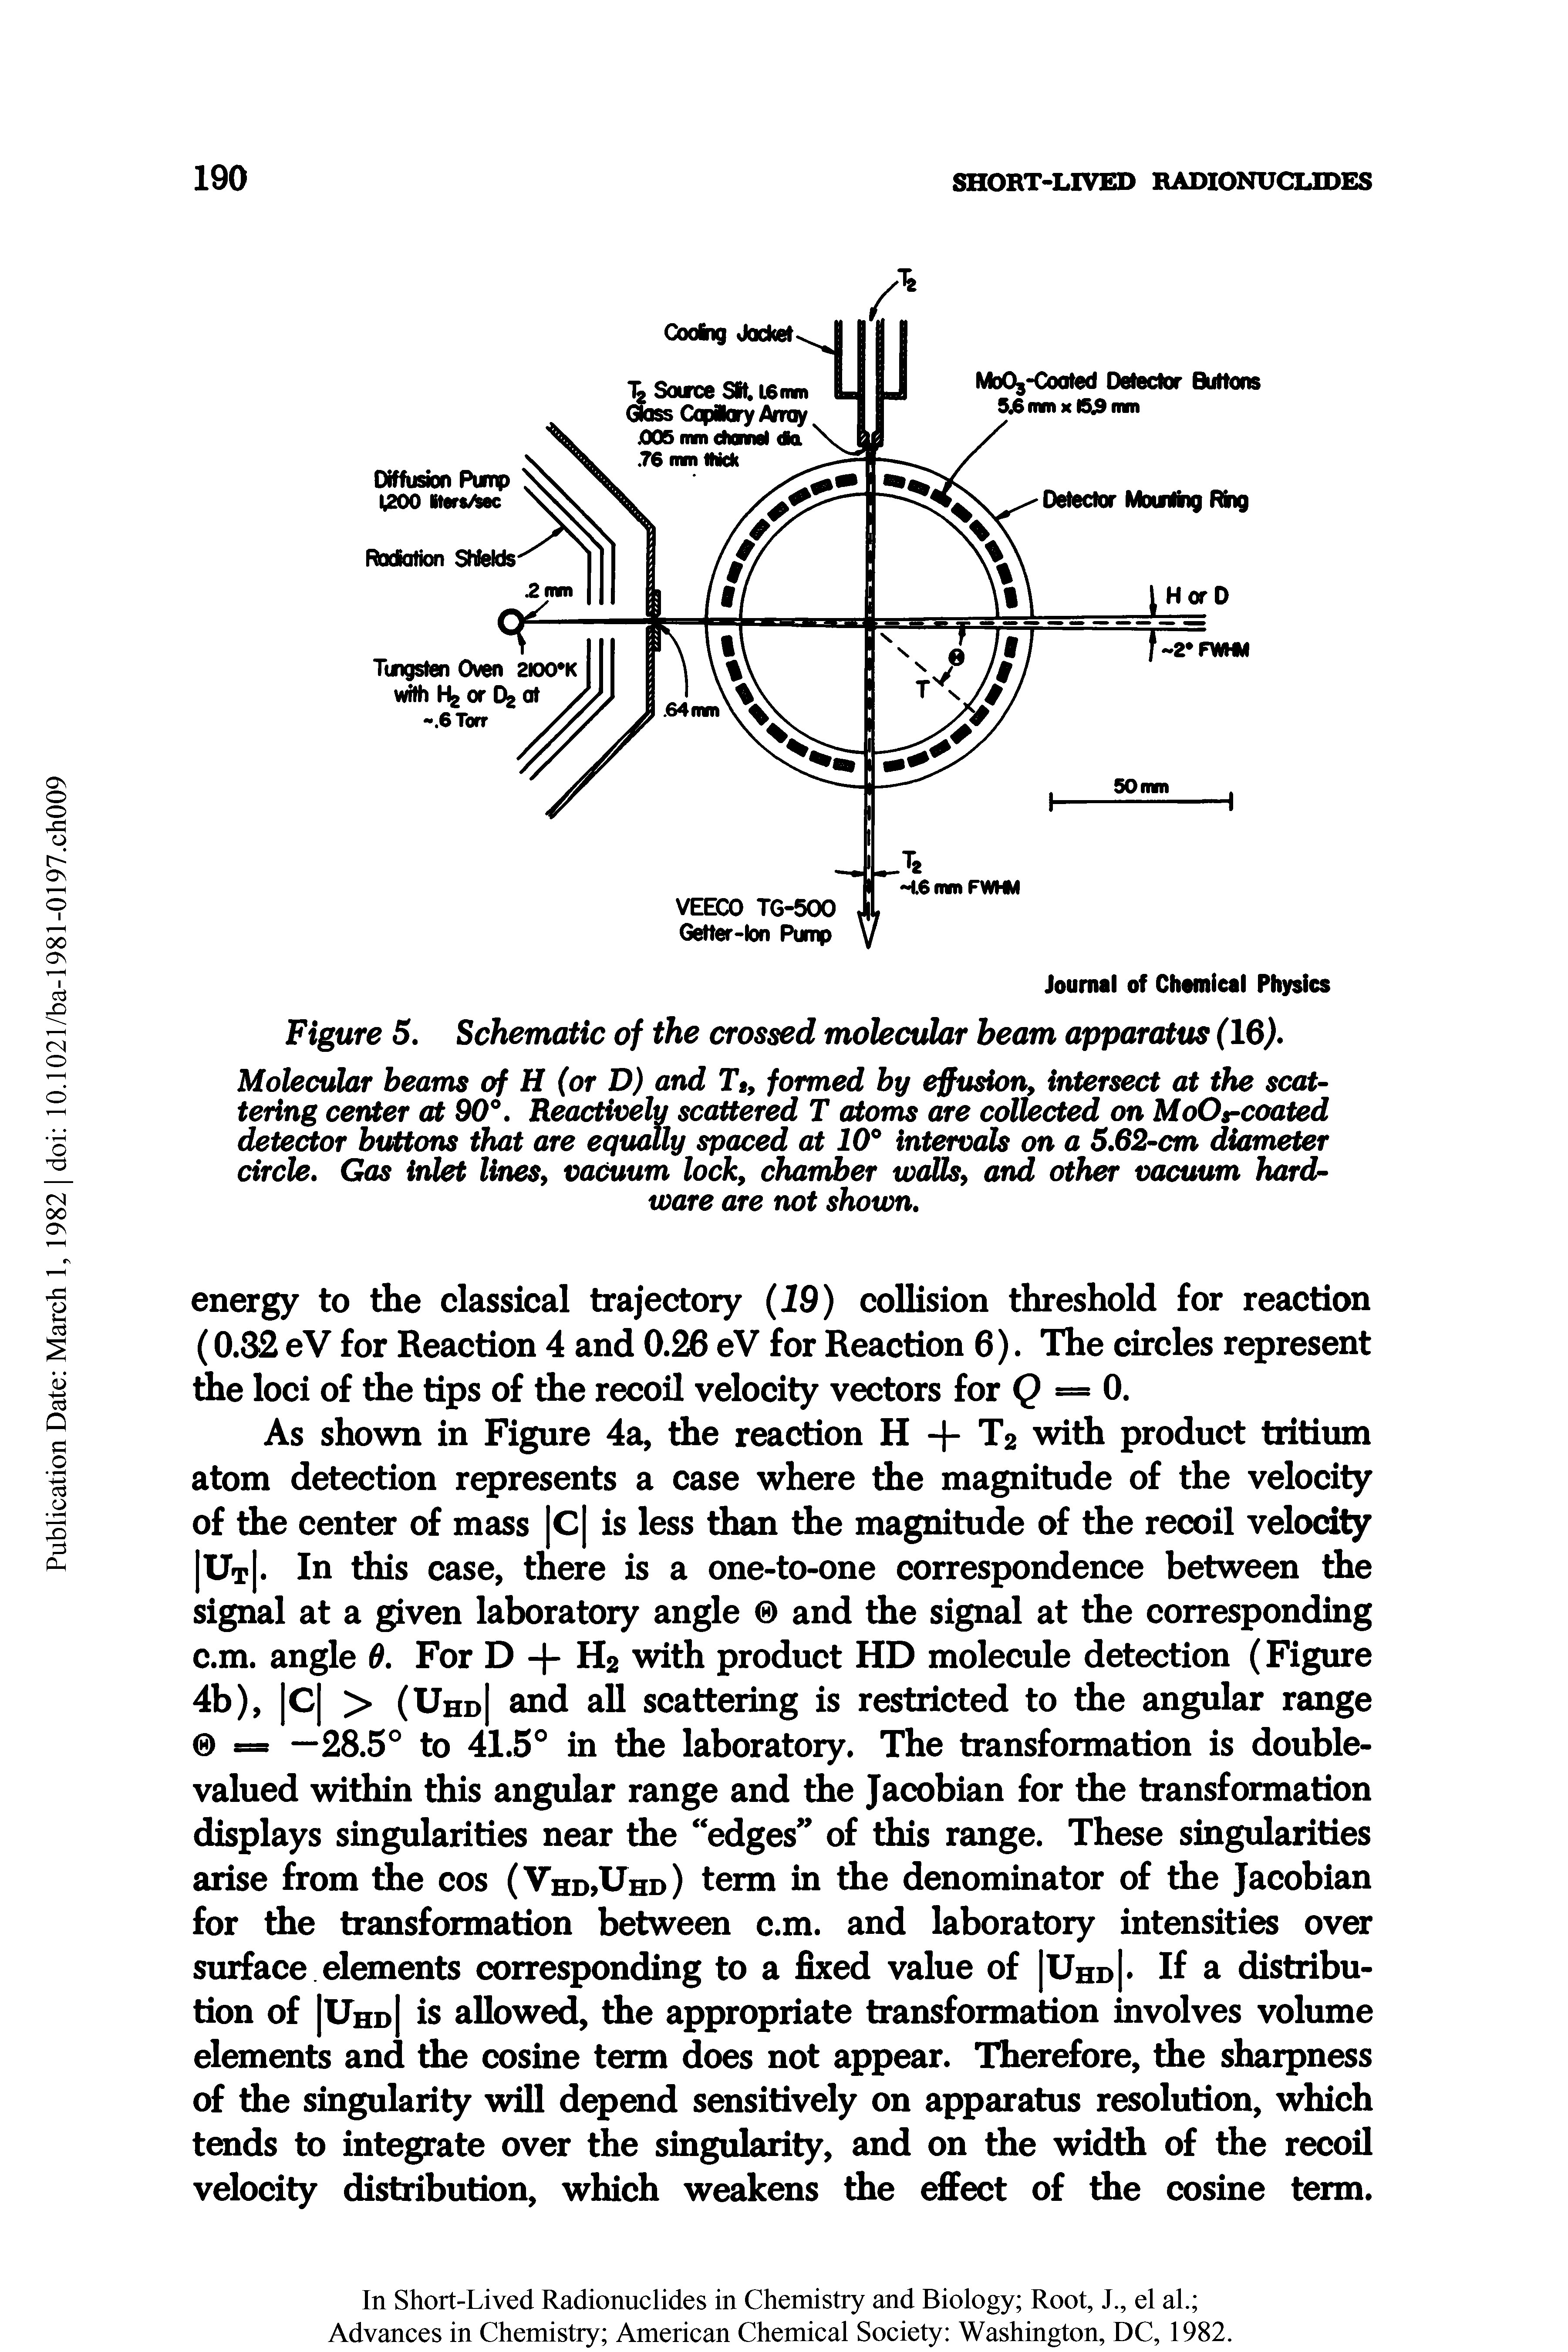 Figure 5. Schematic of the crossed molecular beam apparatus (16. ...